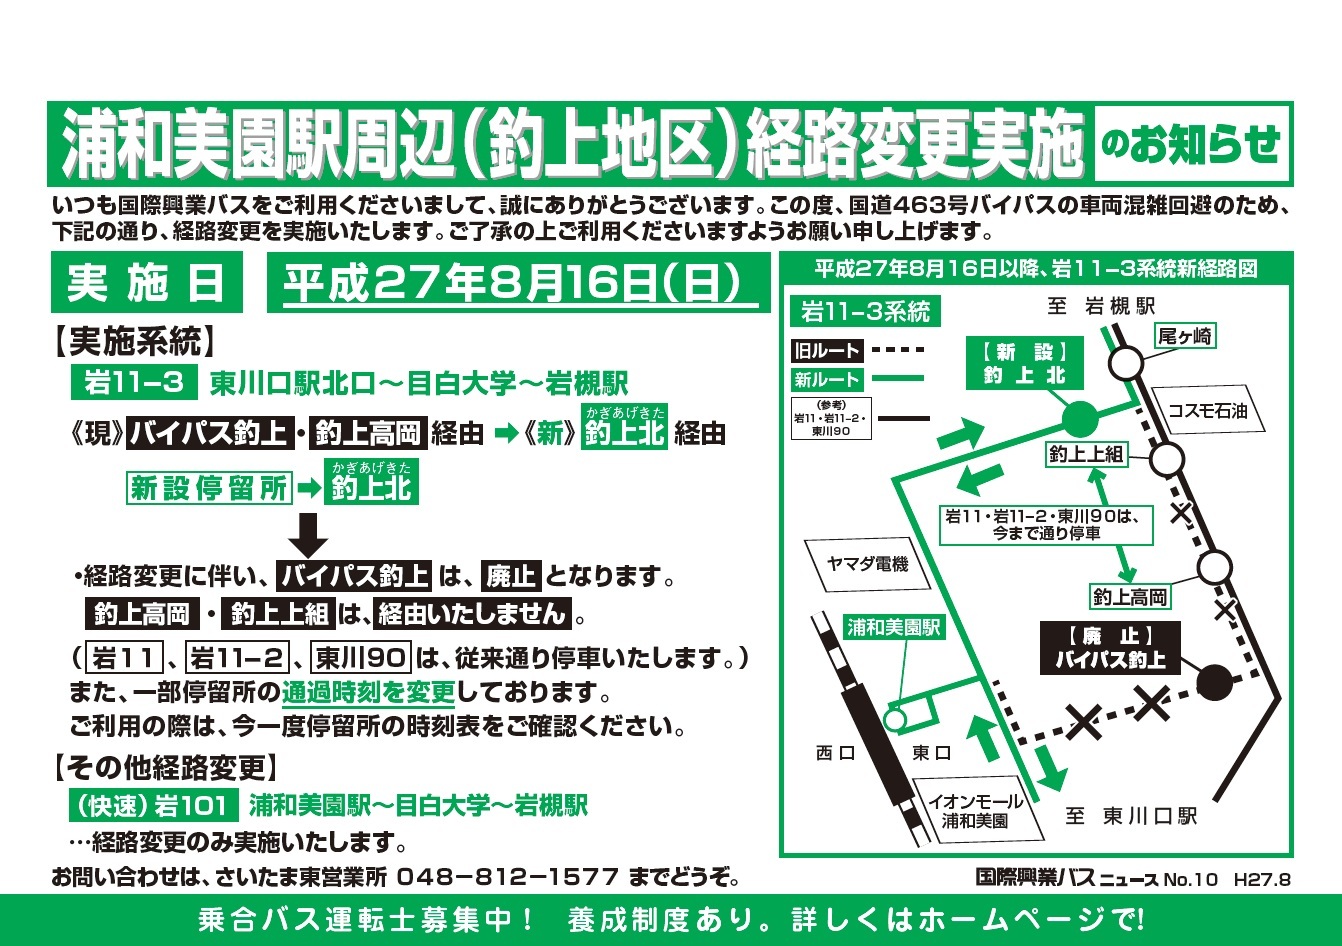 8 16 浦和美園駅周辺 釣上地区 経路変更実施のお知らせ 国際興業バス